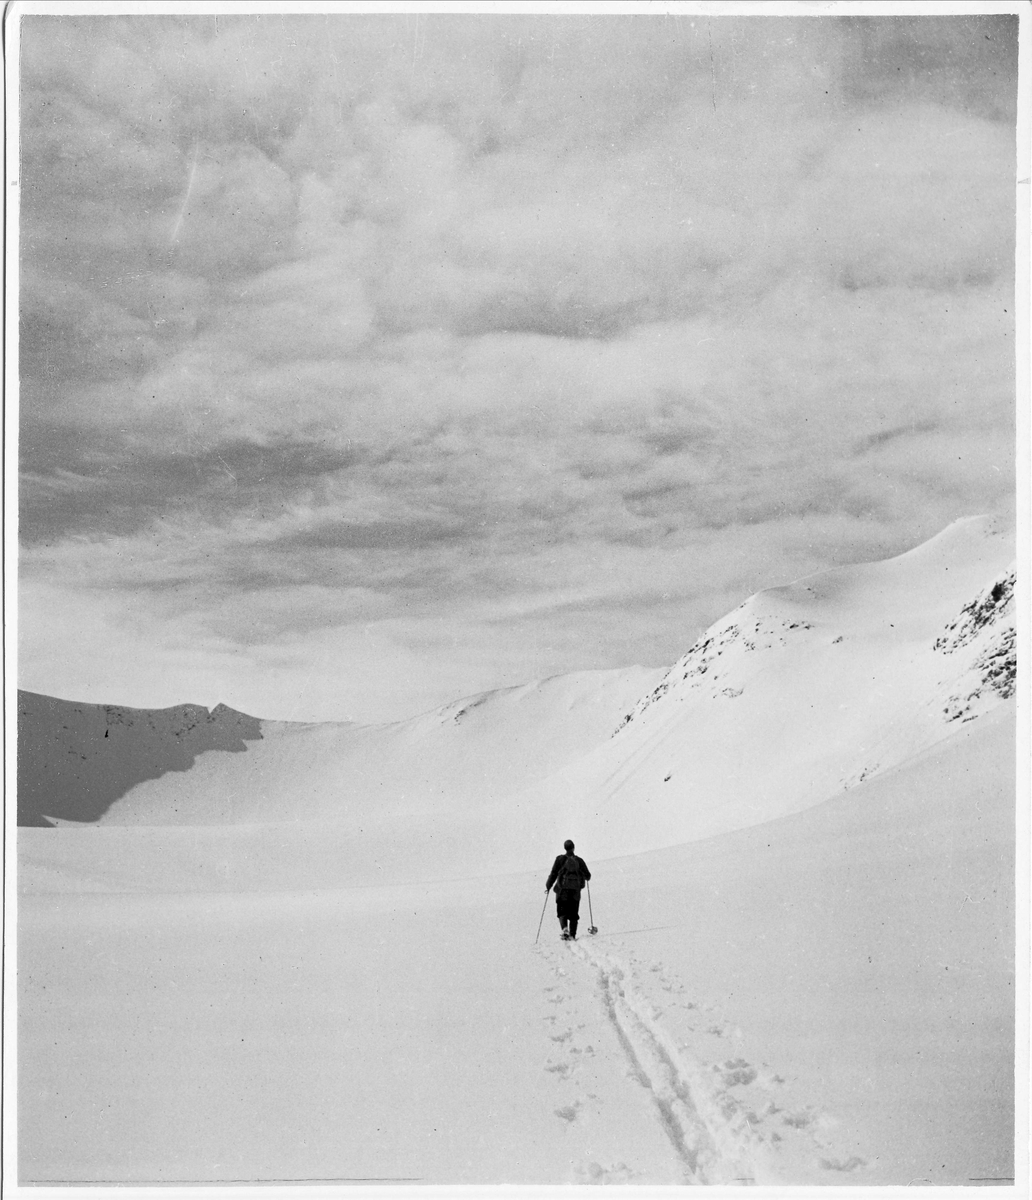 Sylmassivet, Jämtland. En skidåkare på fjället, skidspår i snön.